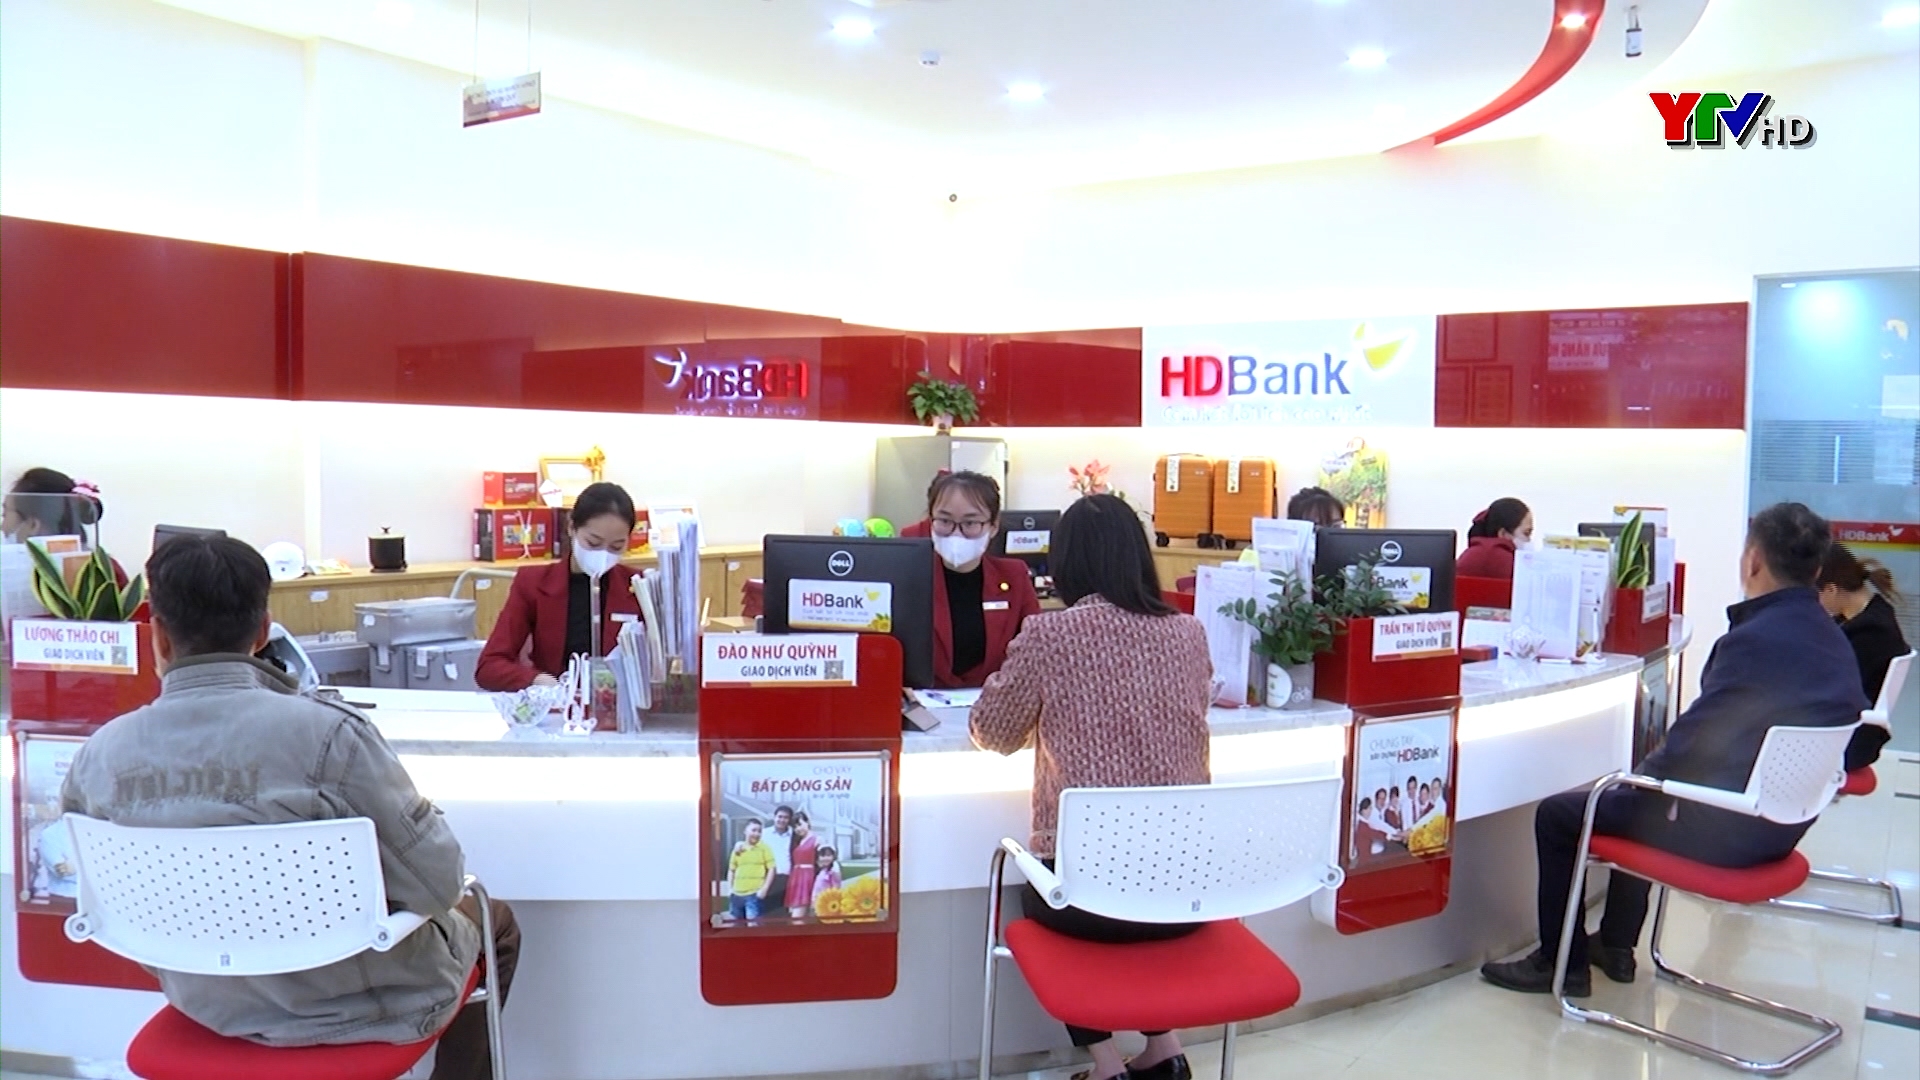 HD Bank Yên Bái hỗ trợ phát triển nông nghiệp, nông thôn